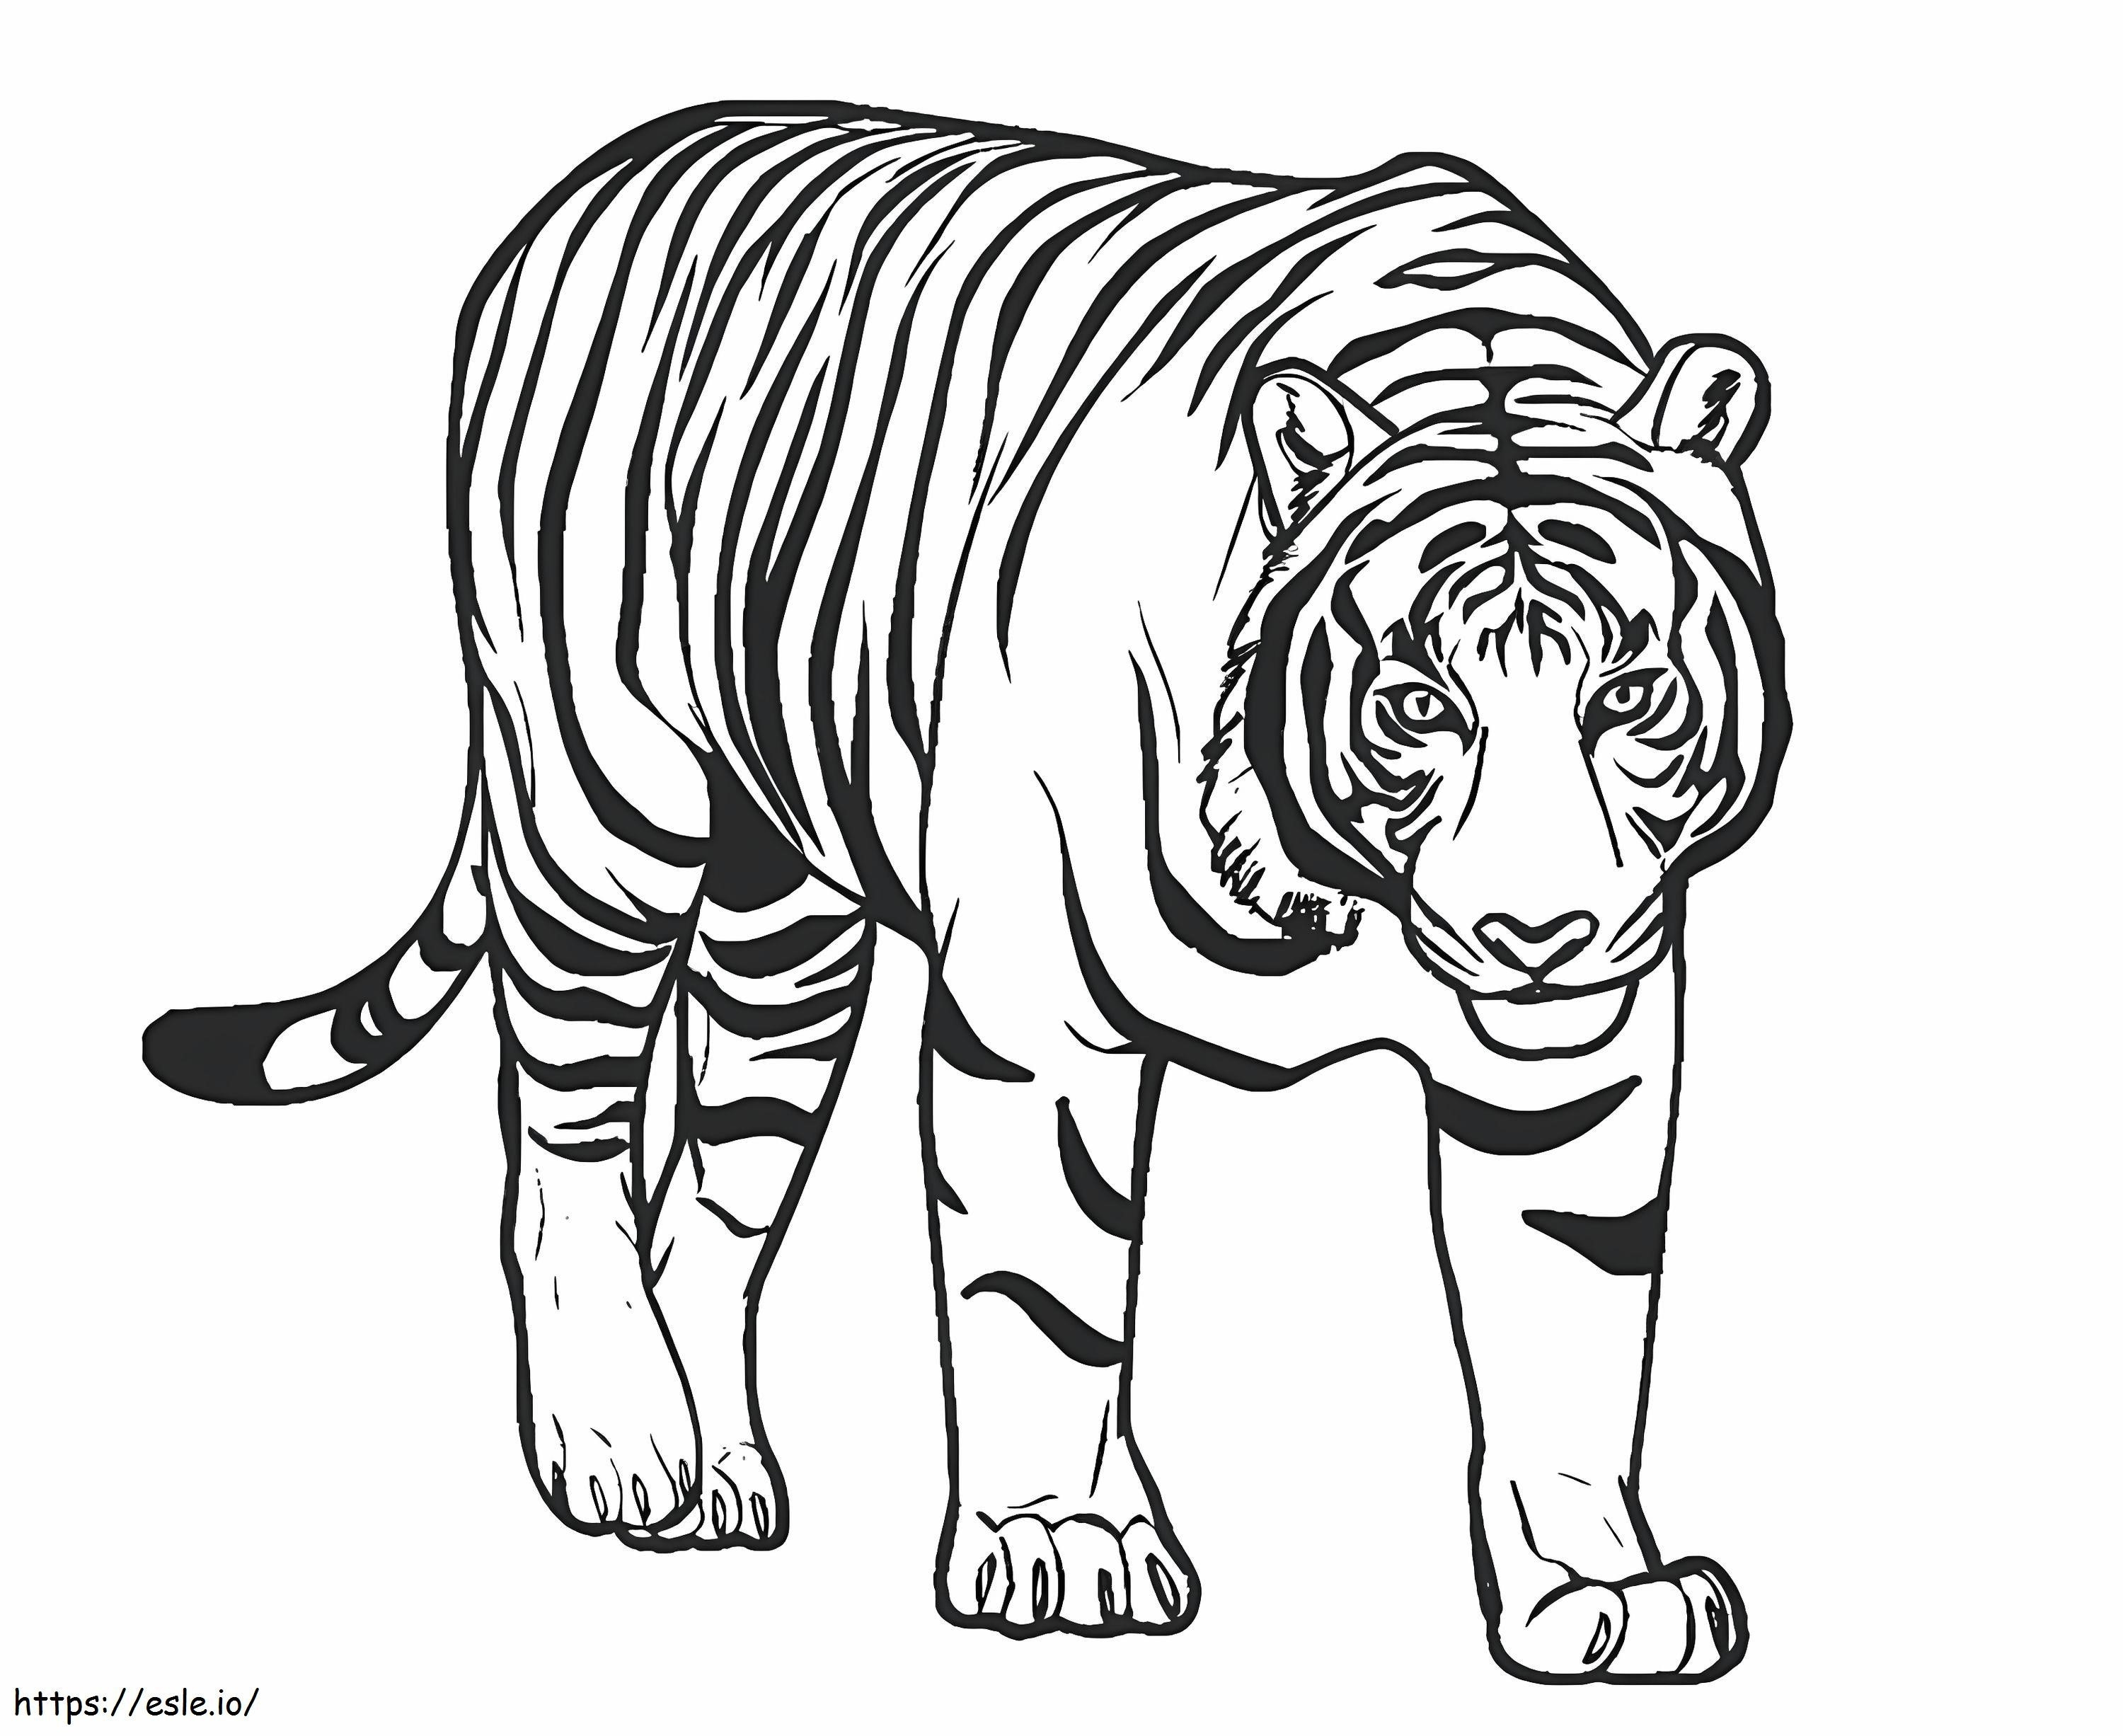 Tigre incrível para colorir